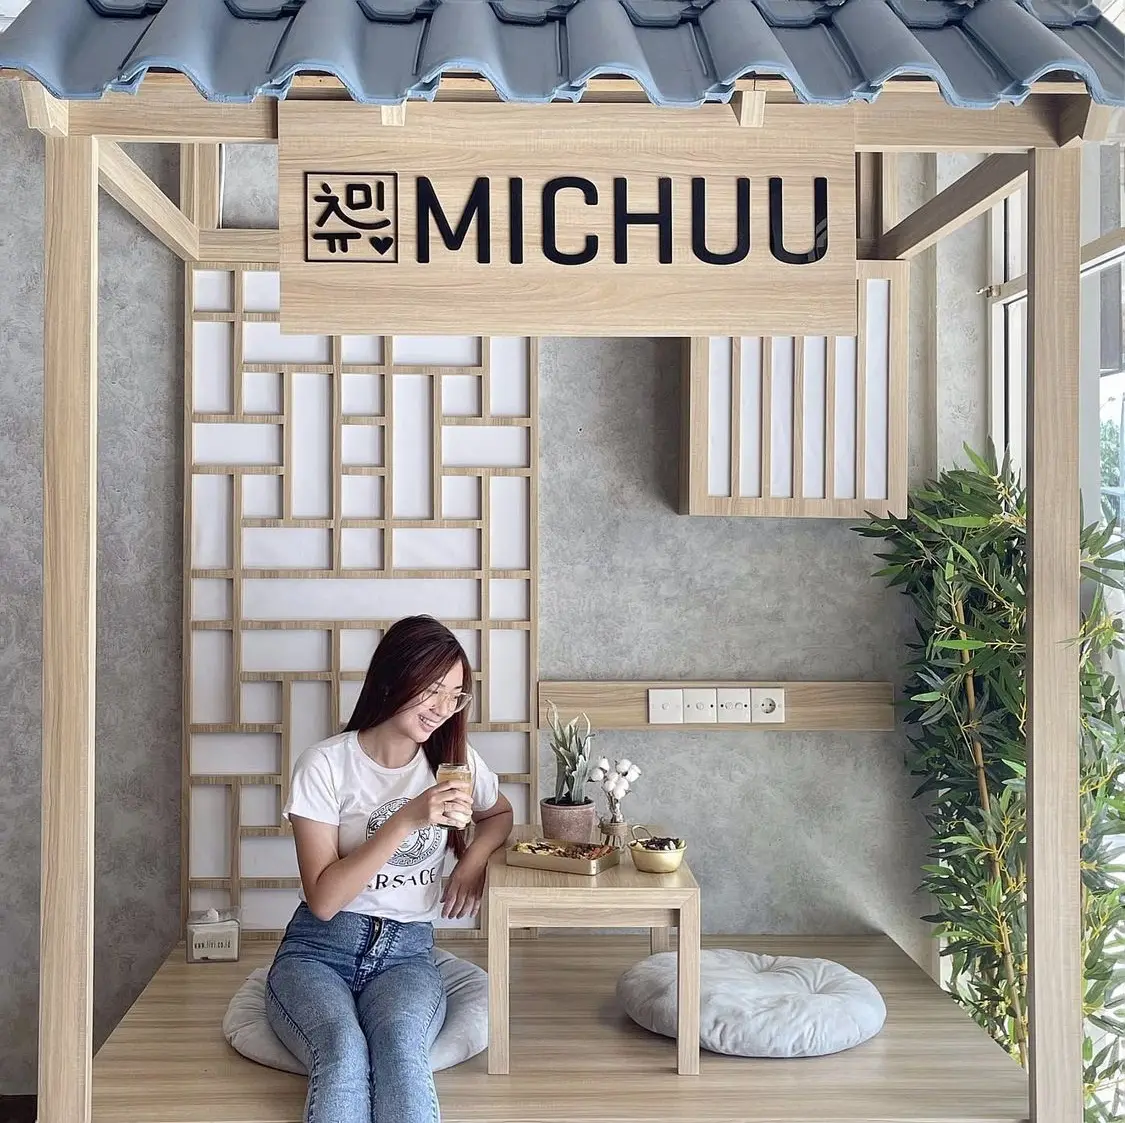 Michuu Coffee House